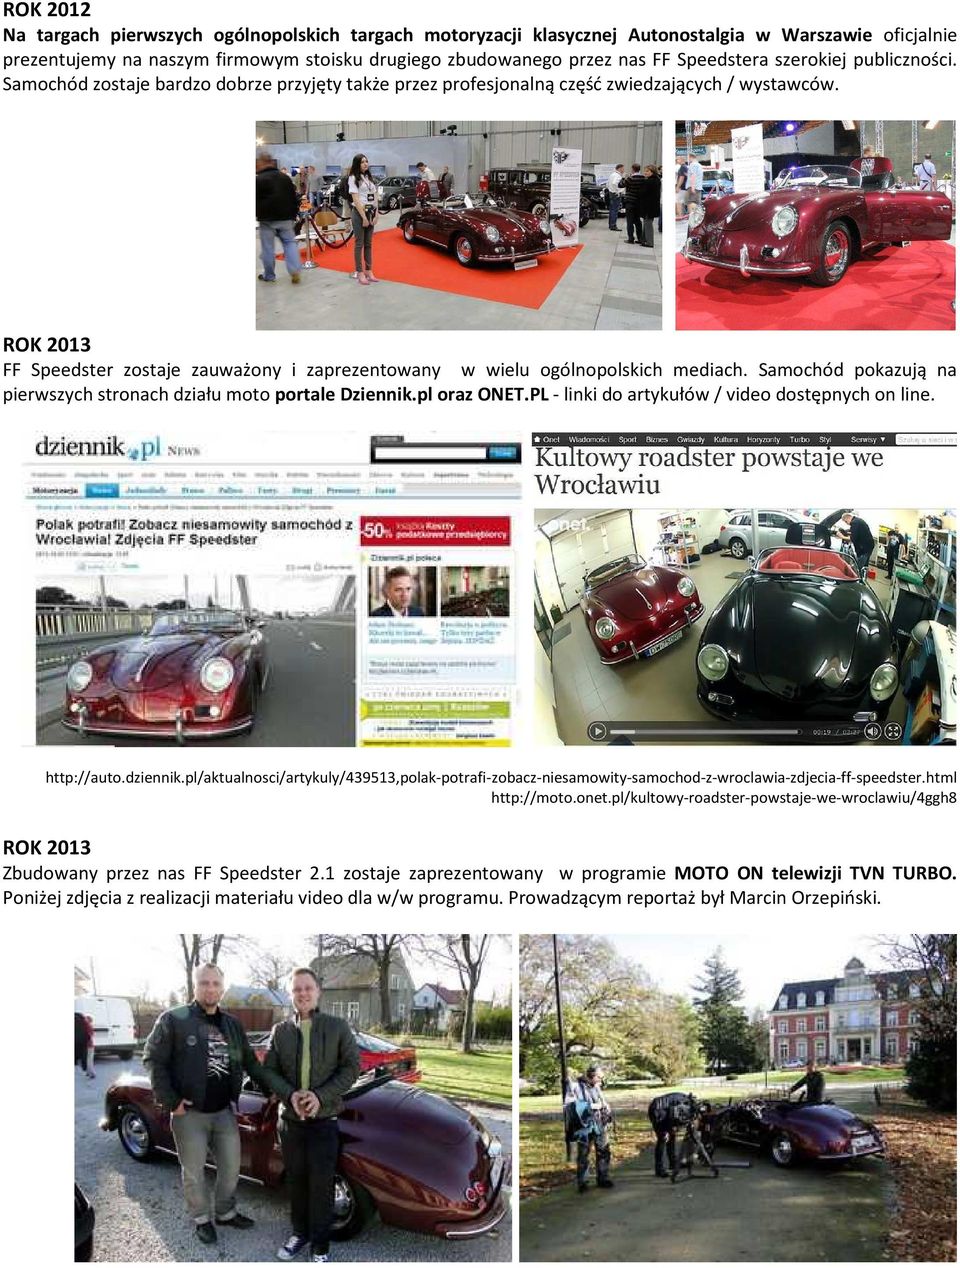 ROK 2013 FF Speedster zostaje zauważony i zaprezentowany w wielu ogólnopolskich mediach. Samochód pokazują na pierwszych stronach działu moto portale Dziennik.pl oraz ONET.